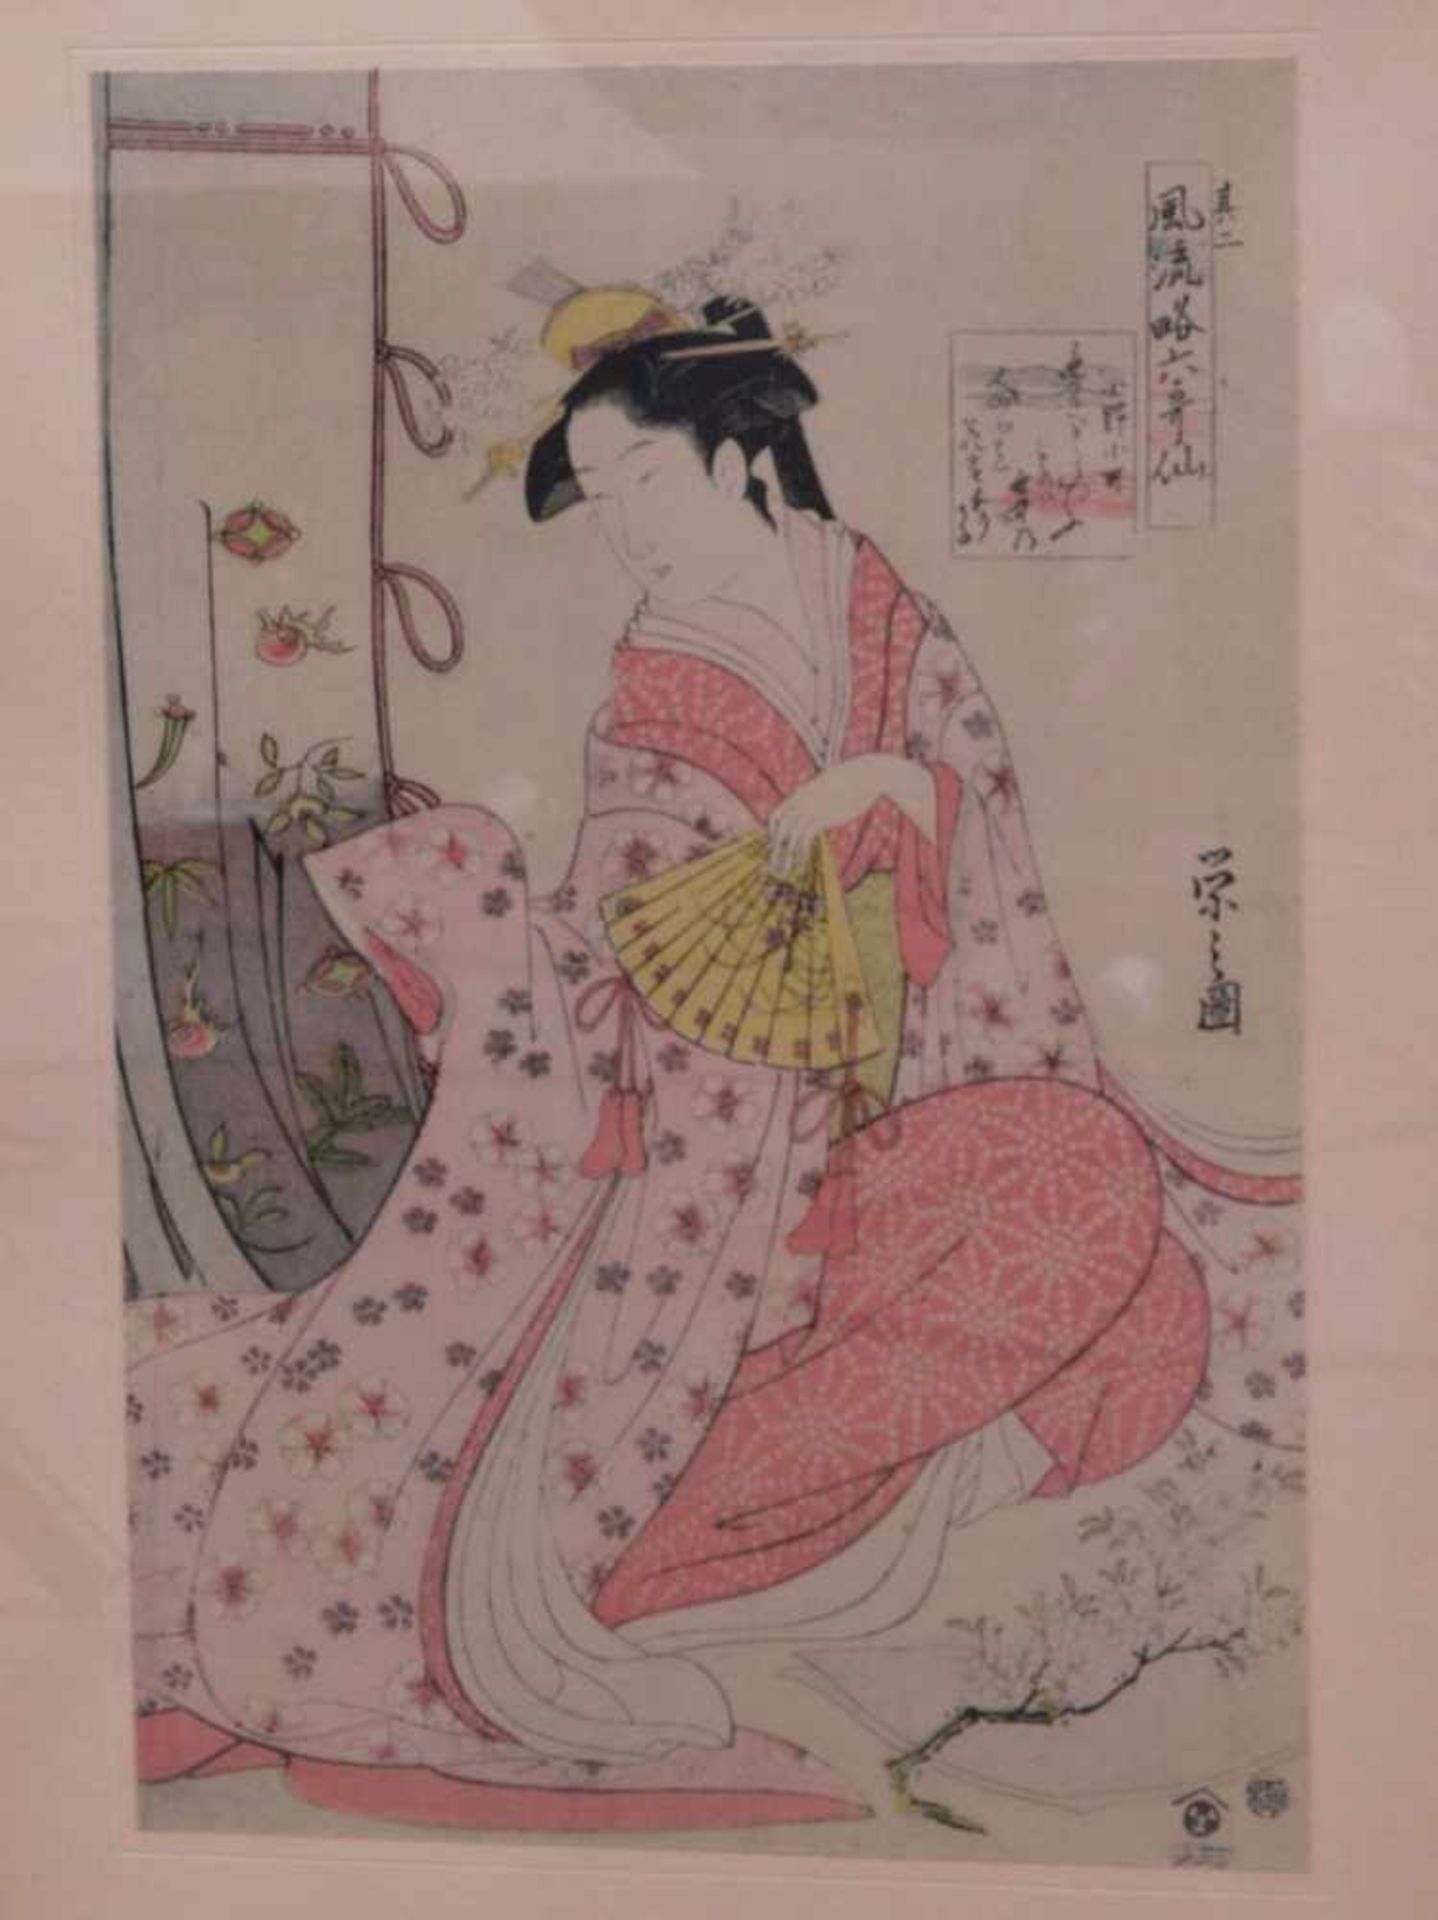 3 japanische ukiyo-e Holzdrucke 19. Jhd.Interieurdarstellungen mit jungen Mädchen beim Zeitvertreib. - Bild 2 aus 8